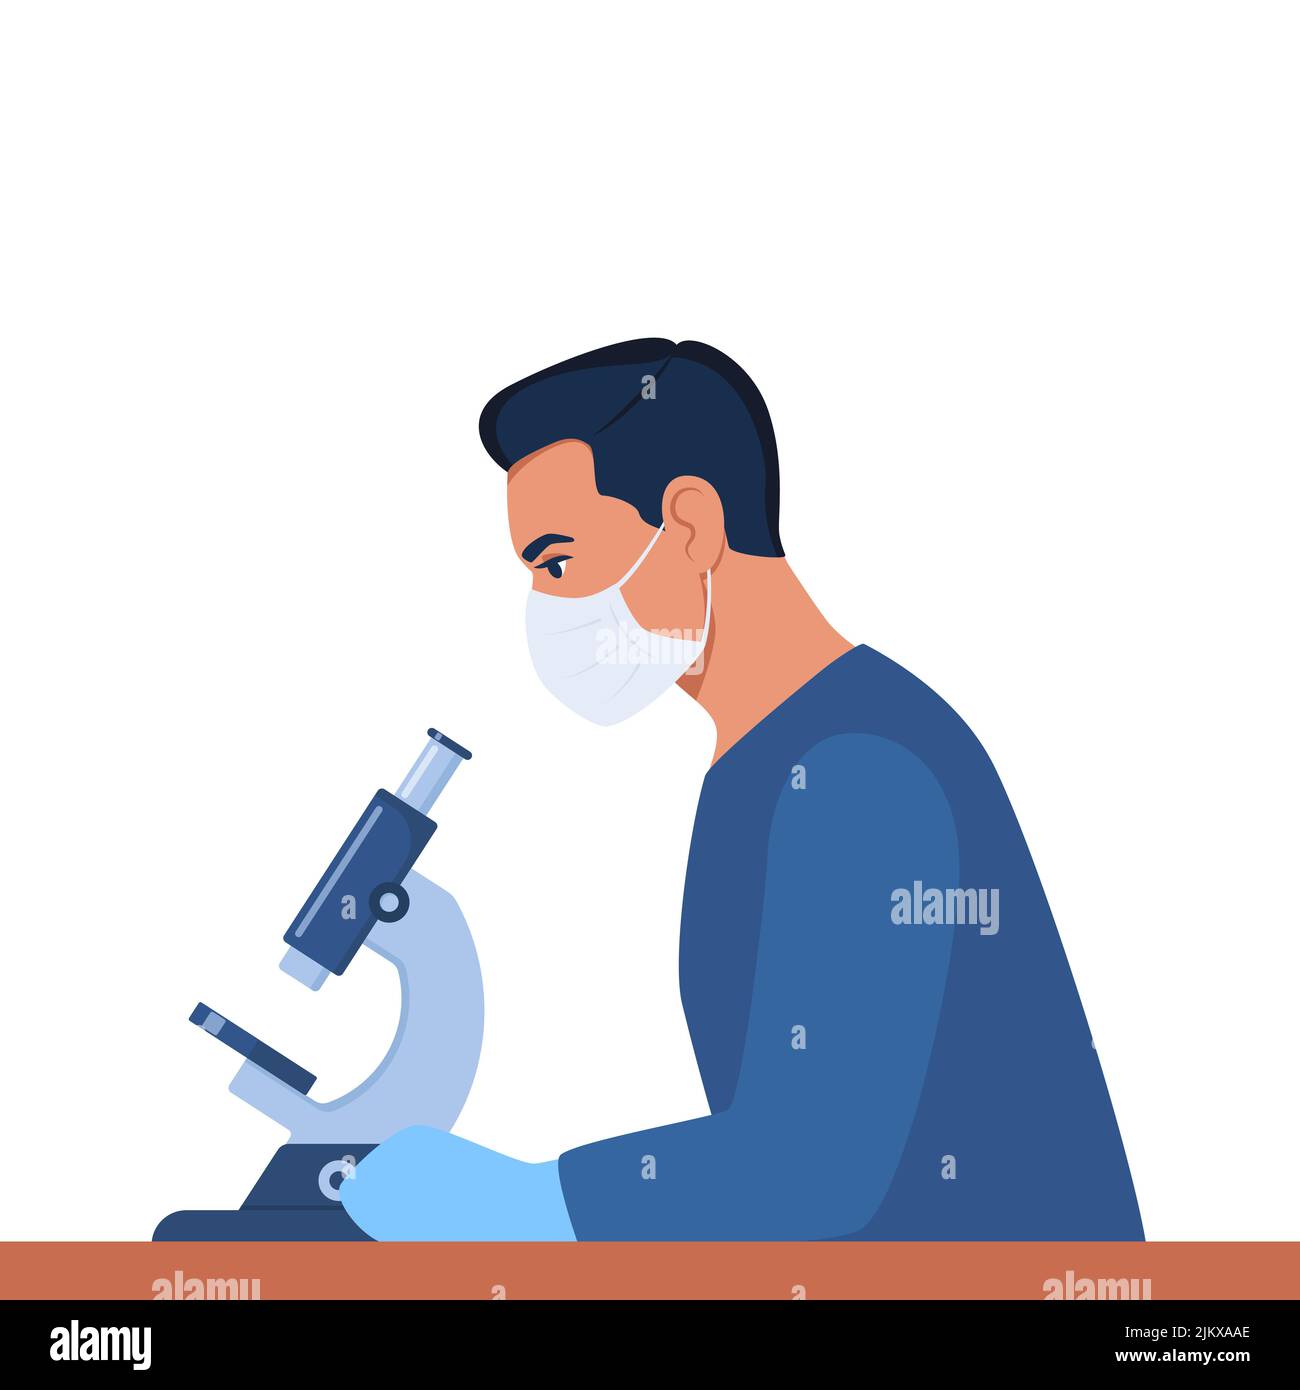 Der Wissenschaftler schaut durch ein Mikroskop. Chemielaborspezialist, der an Forschung und Erforschung arbeitet, sitzt in potectiv am Tisch Stock Vektor